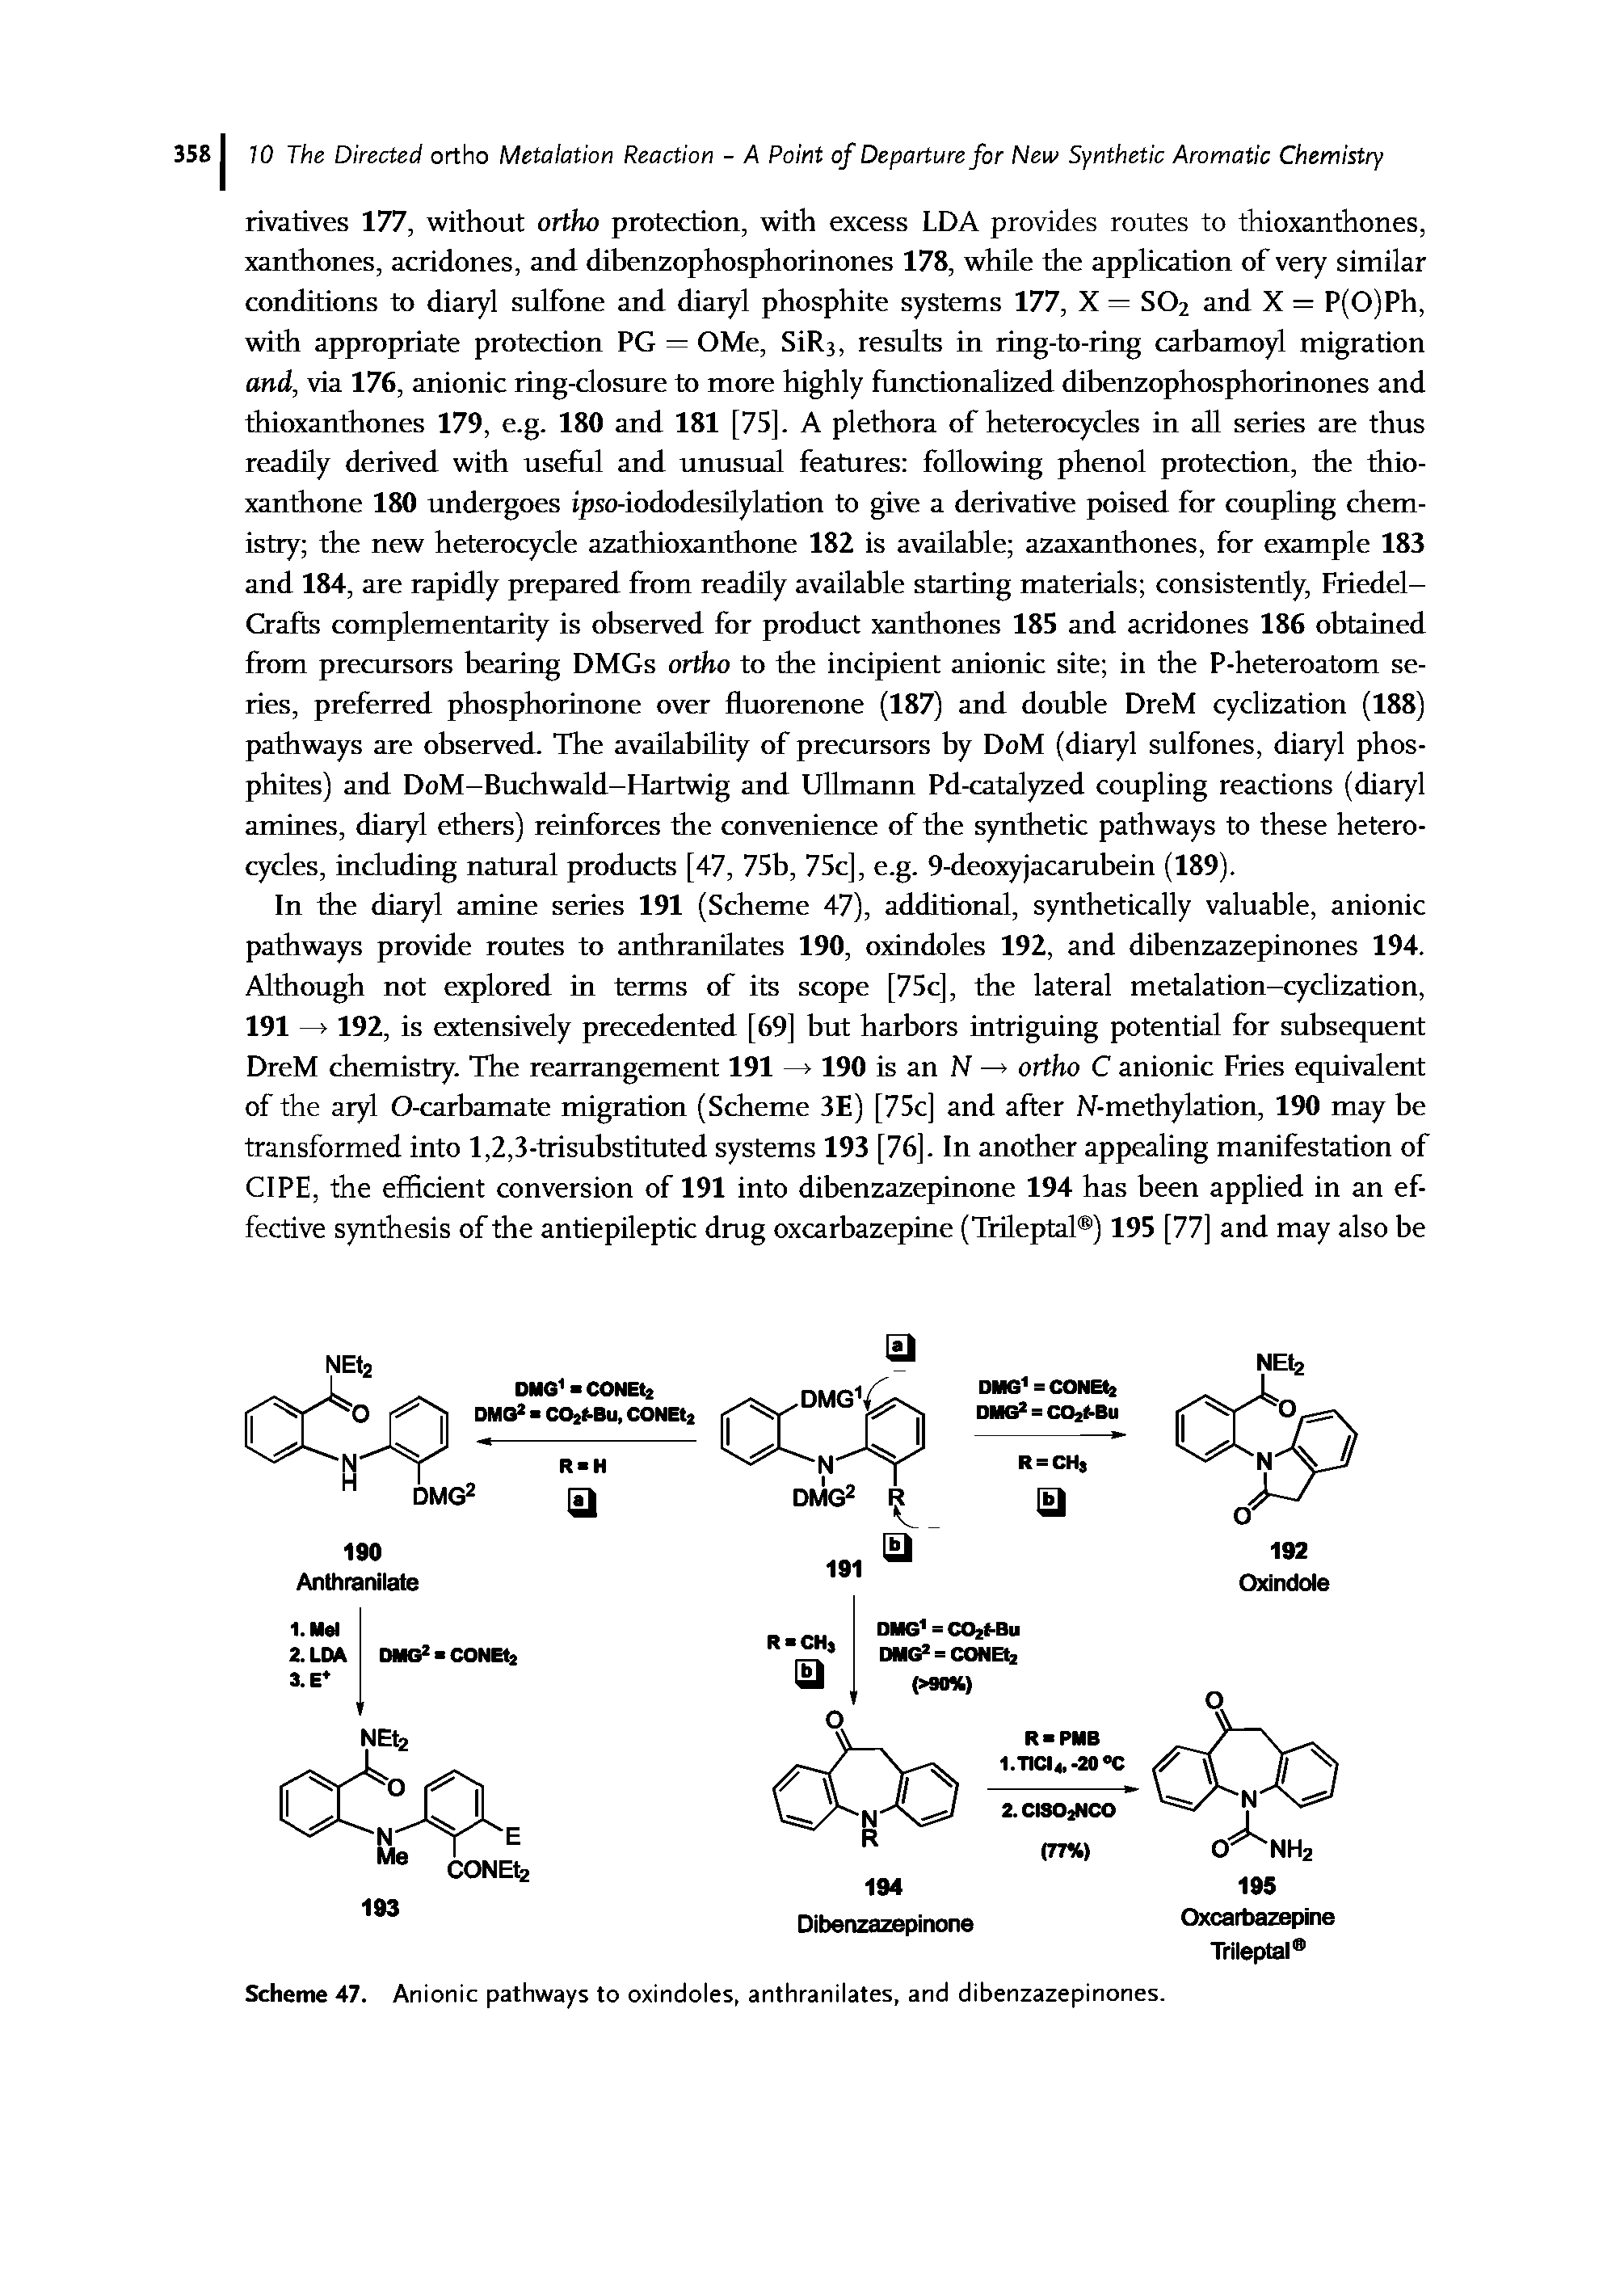 Scheme 47. Anionic pathways to oxindoles, anthranilates, and dibenzazepinones.